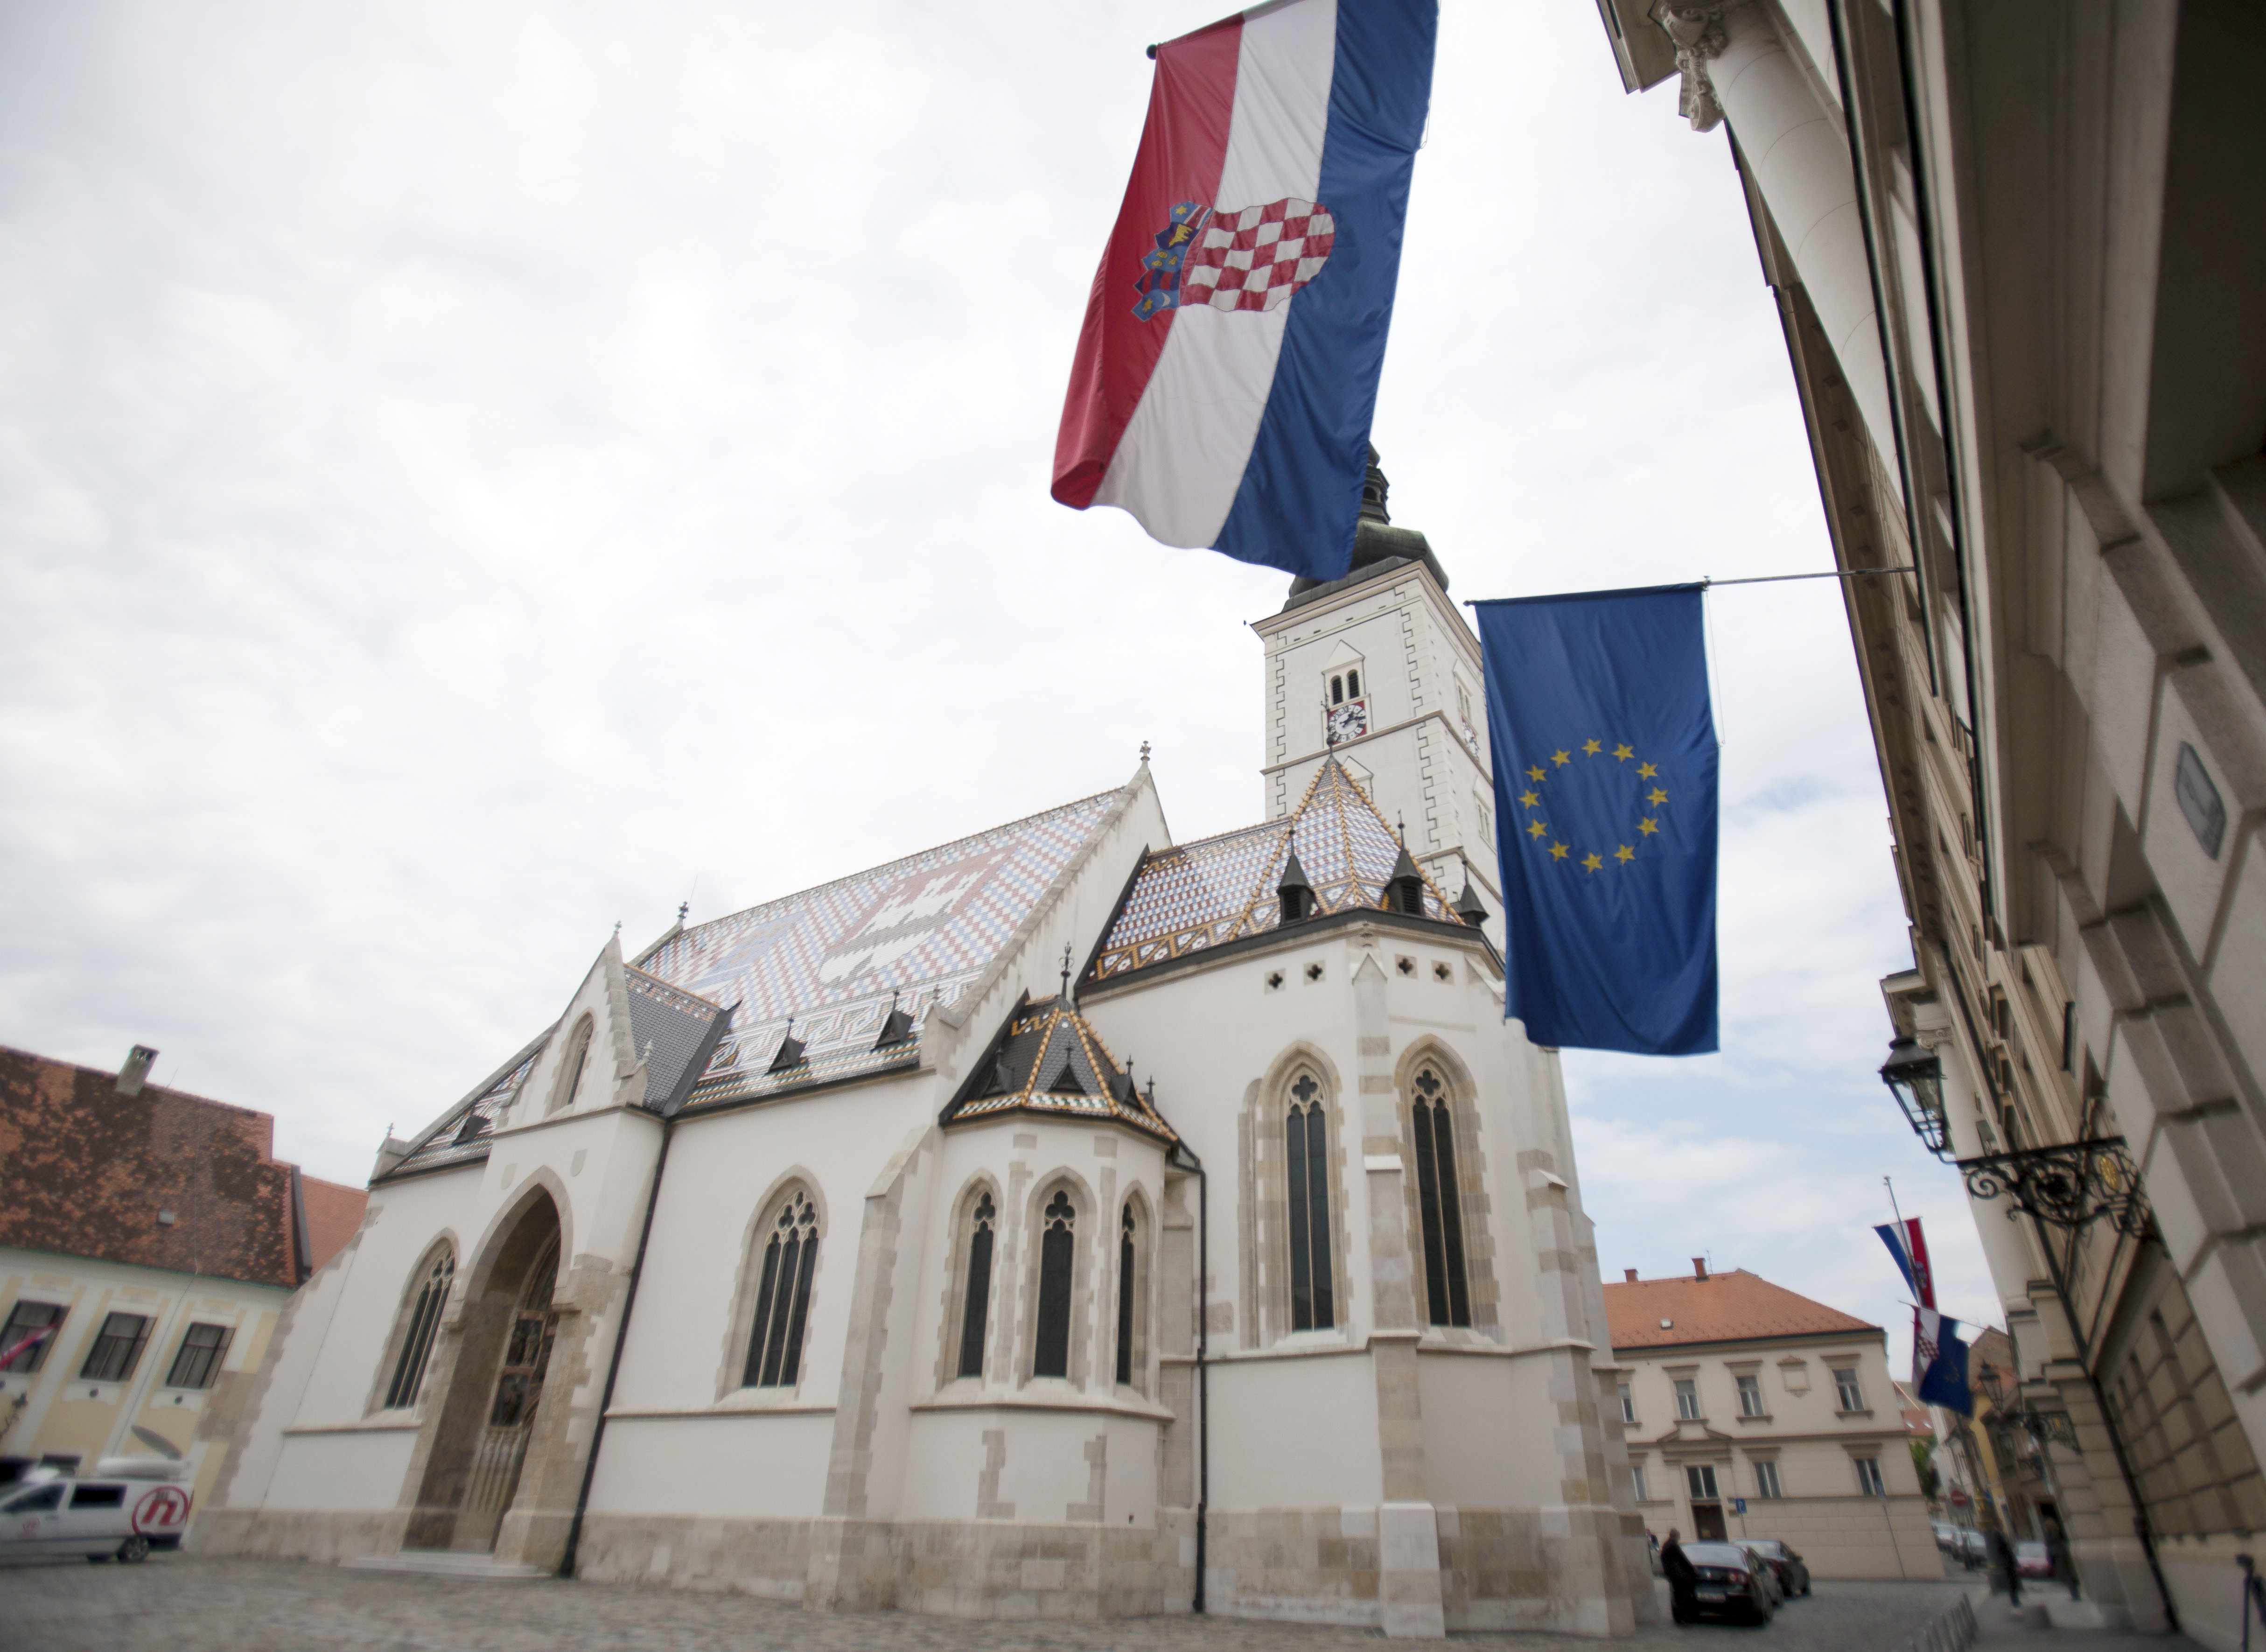 Κομισιόν: Ετοιμη να ενταχθεί στην ΕΕ την 1η Ιουλίου η Κροατία